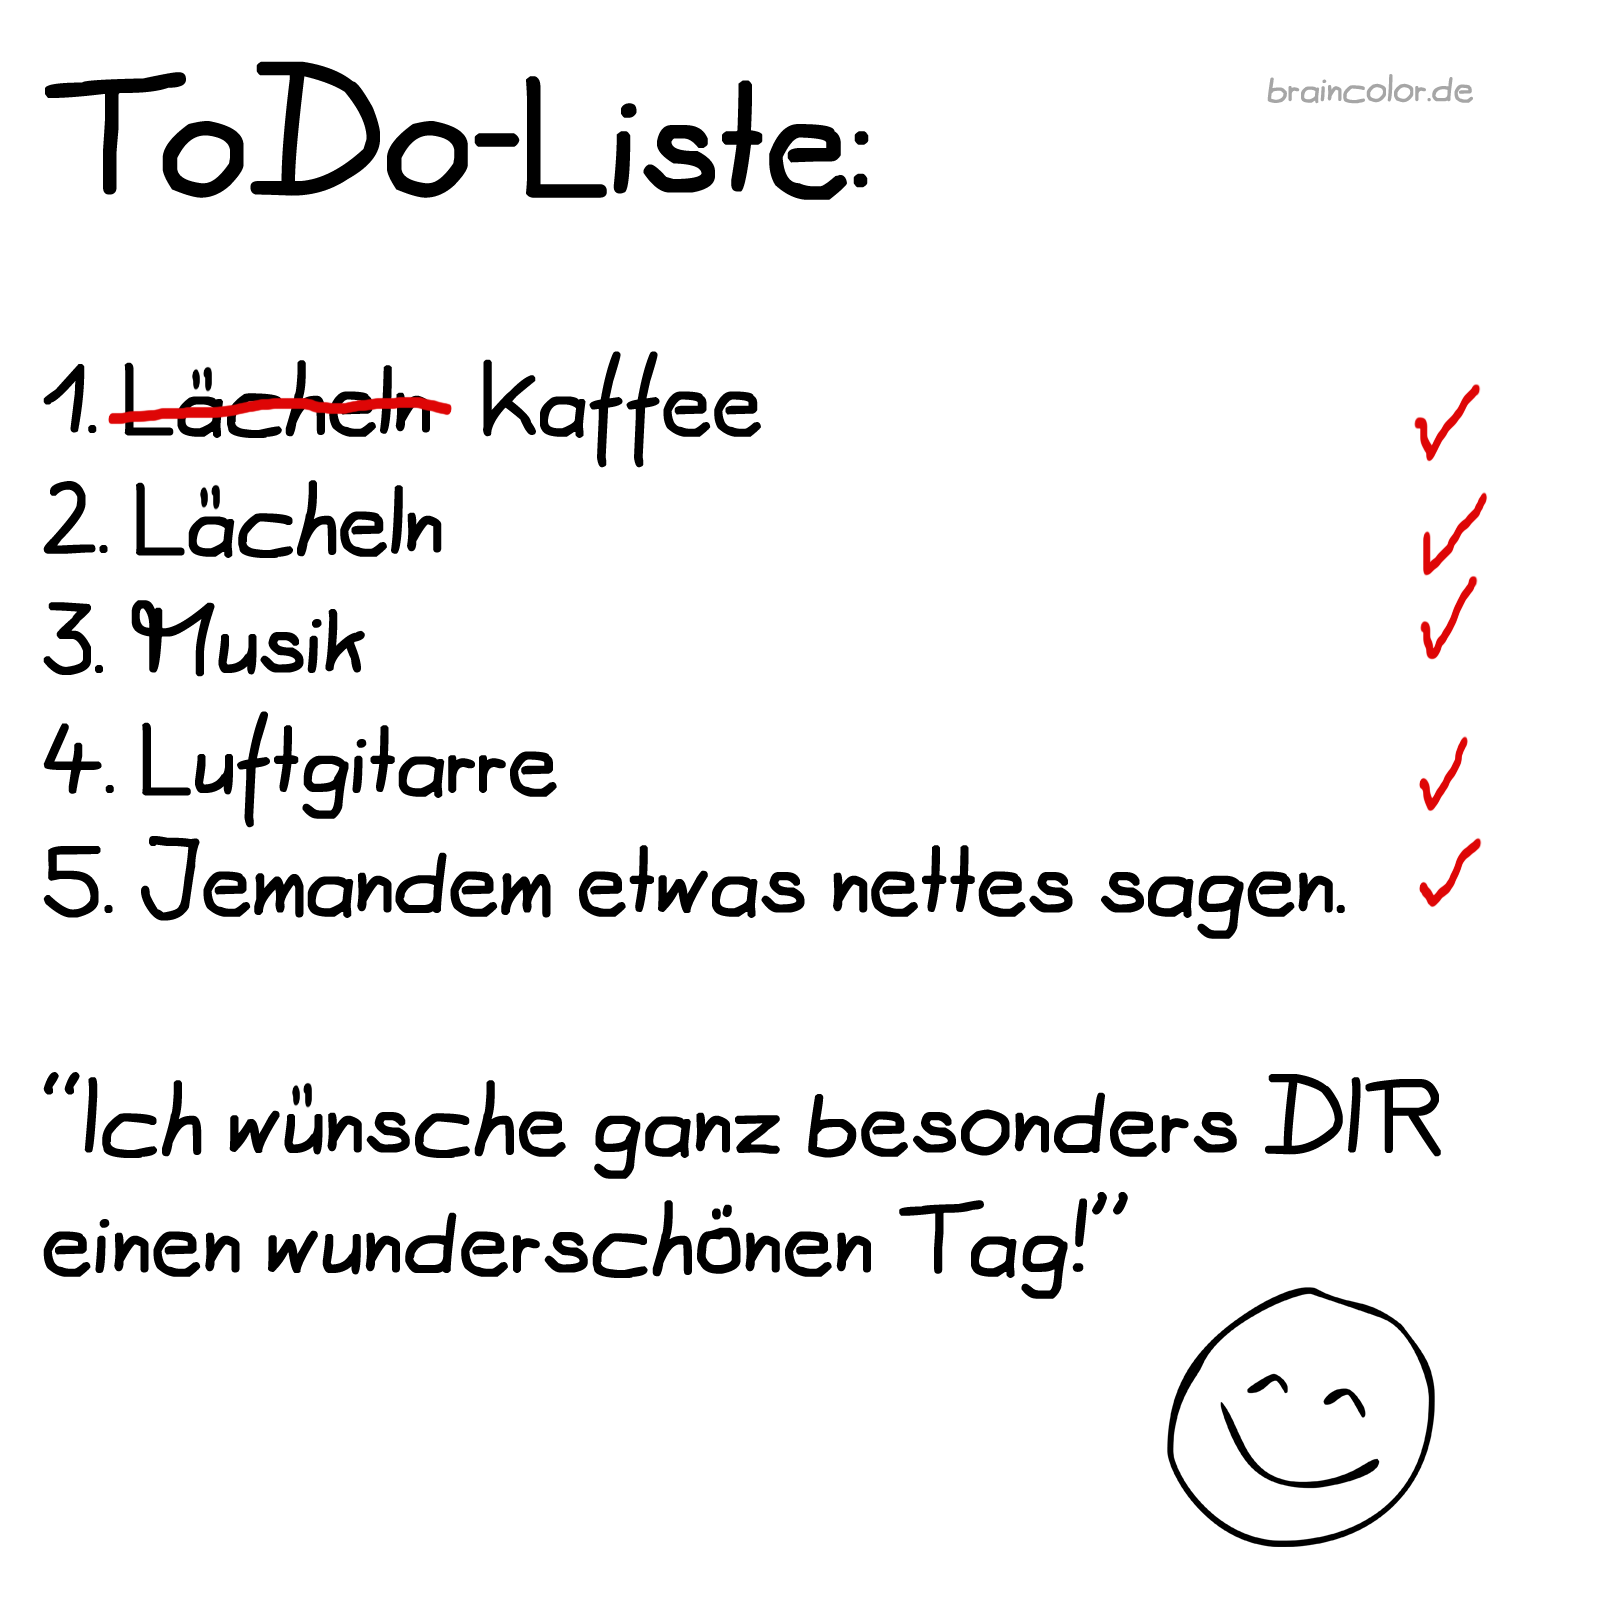 ToDo-Liste